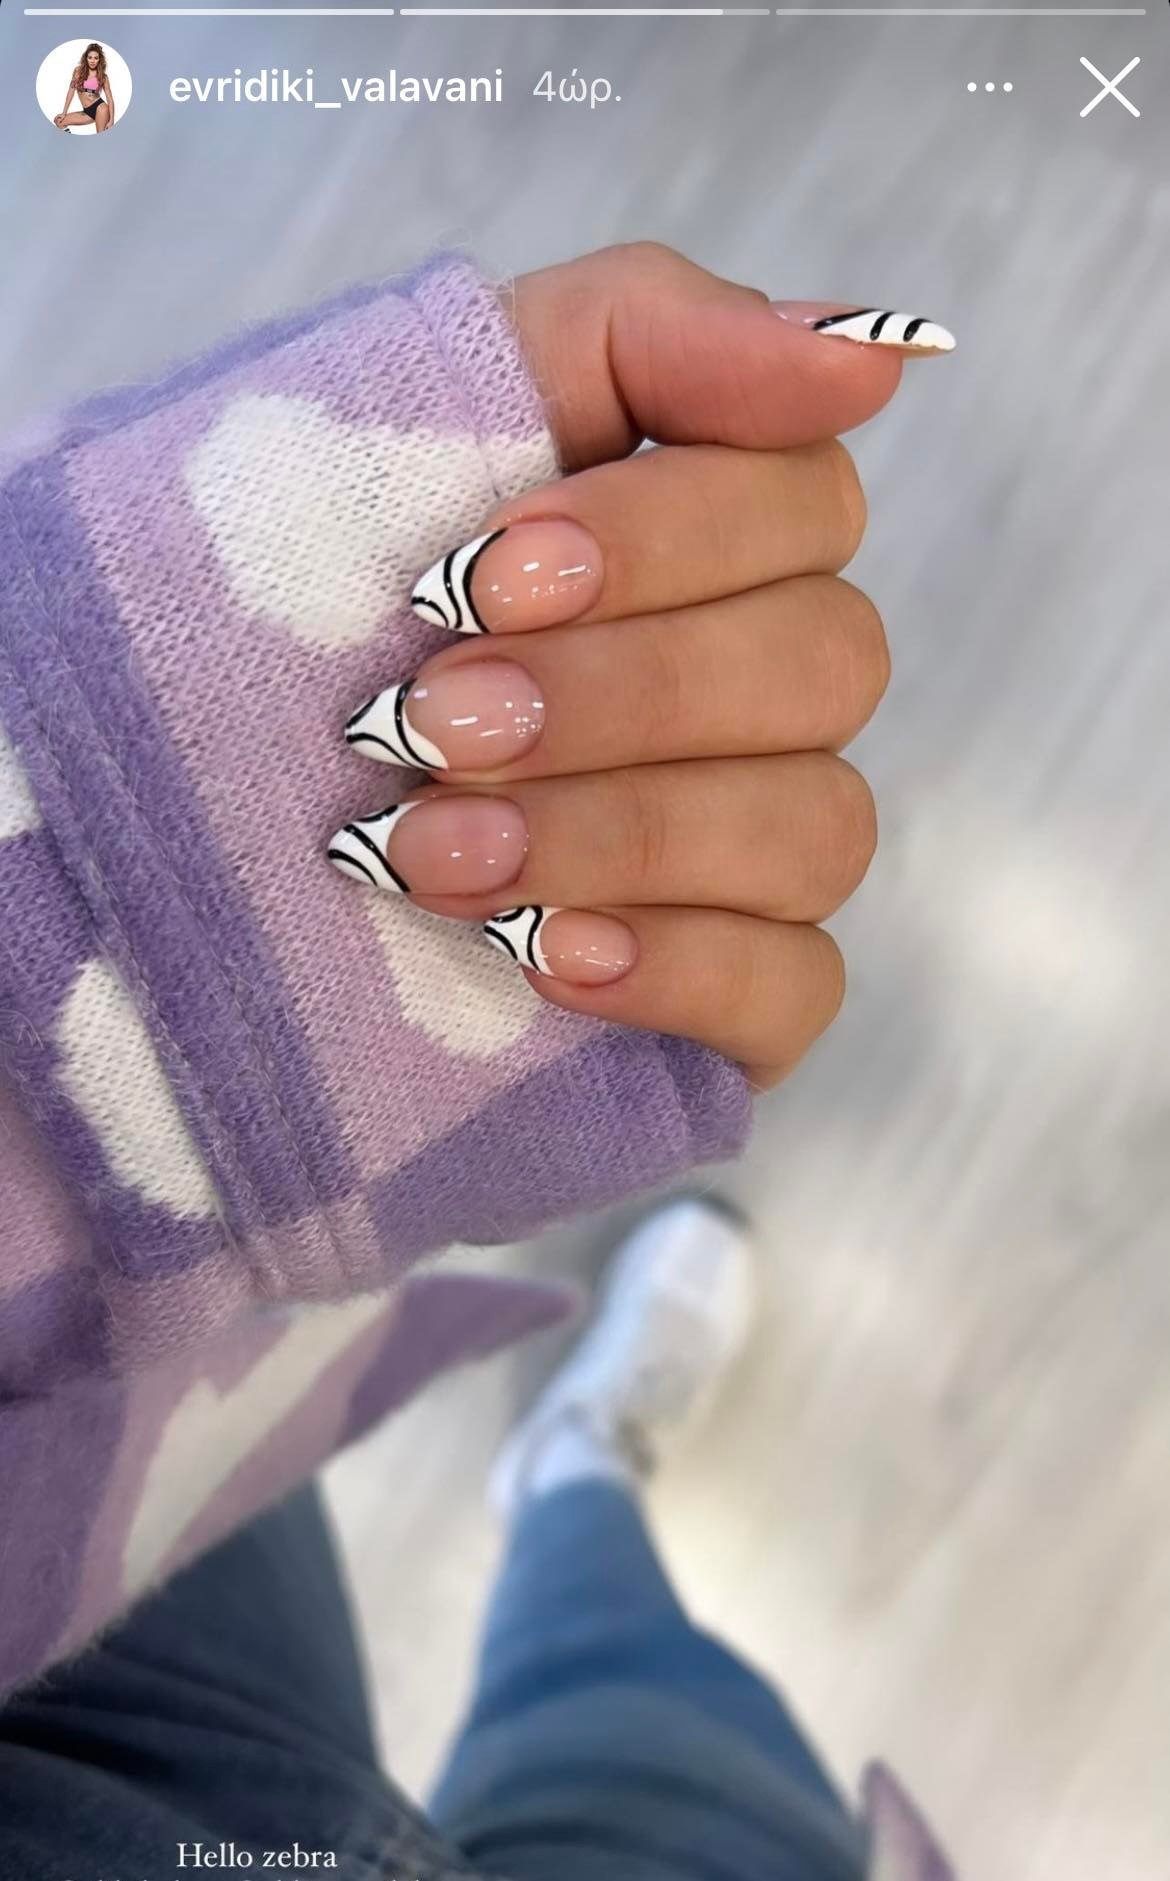 nails 